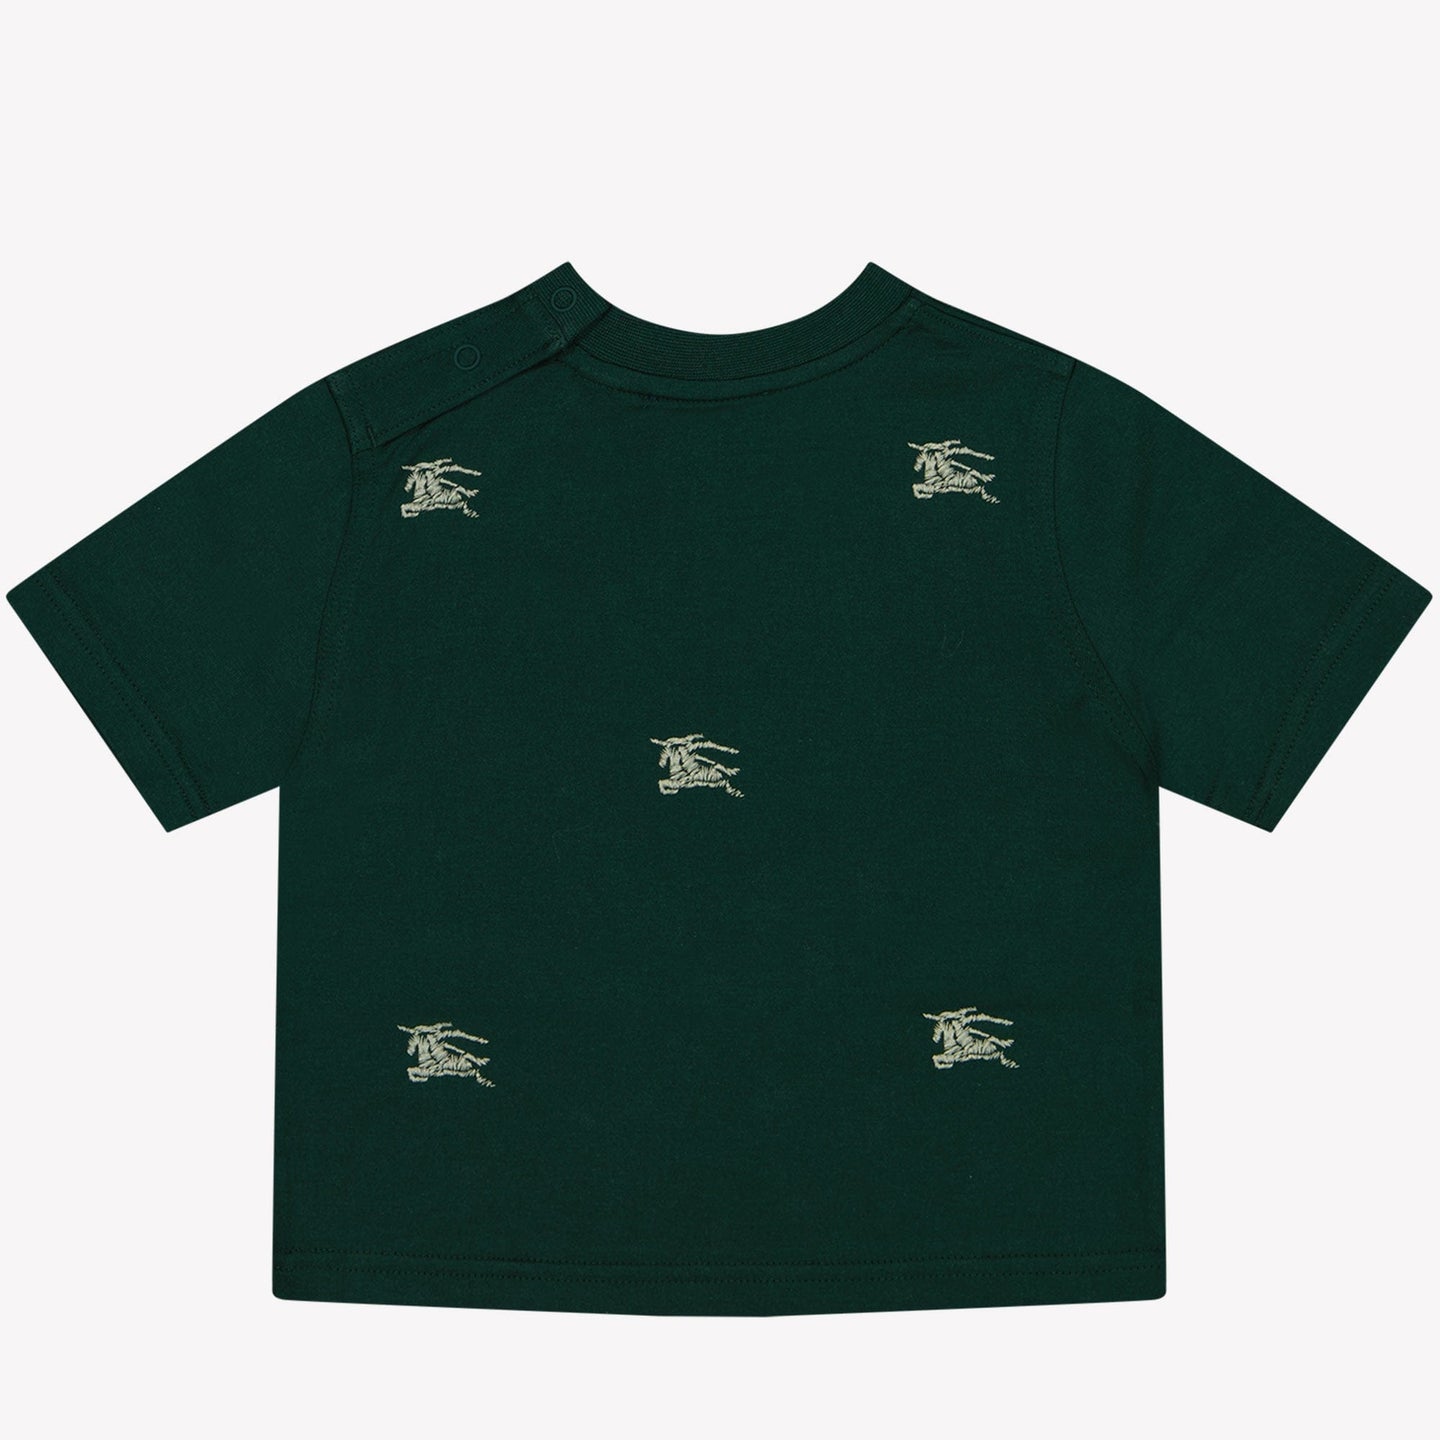 Burberry Baby Jongens T-shirt Donker Groen 6 mnd